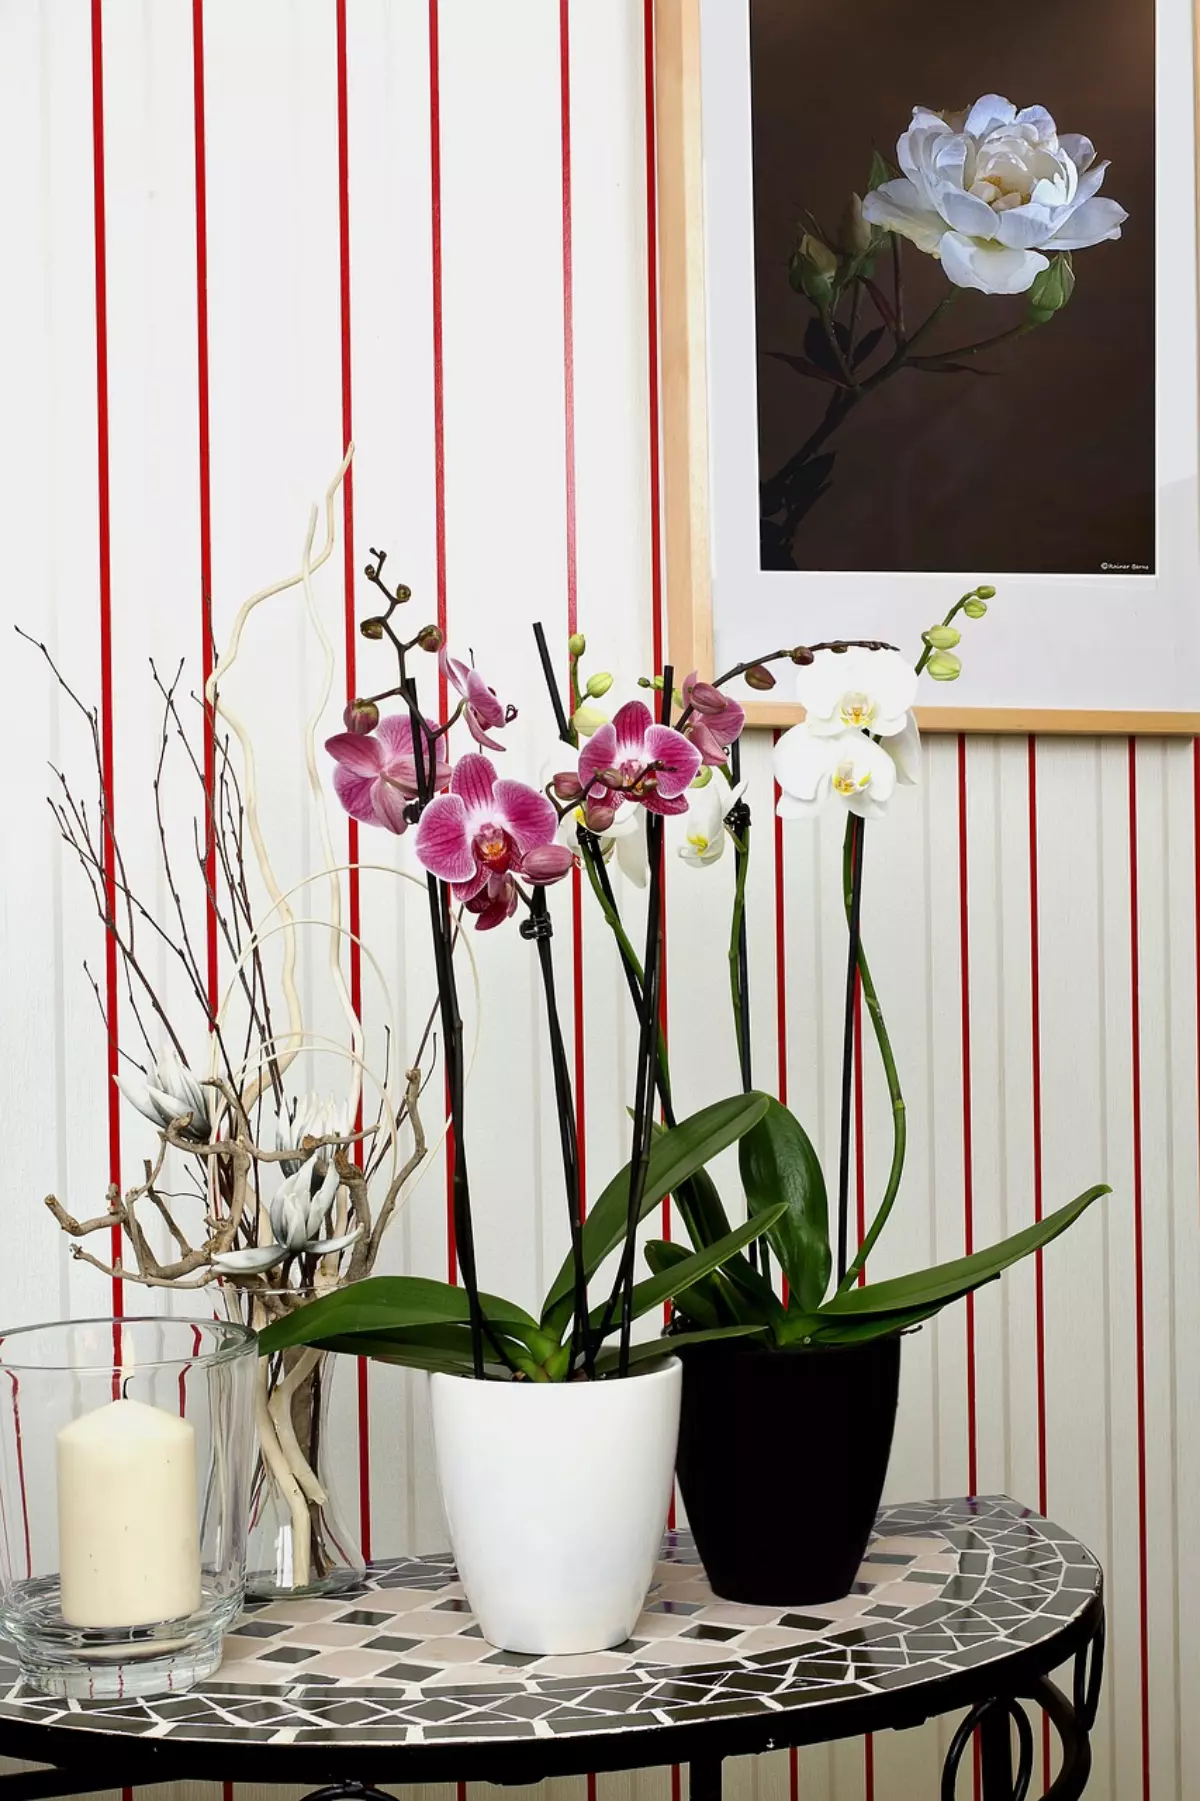 une orchidee mauve dans un pot blanc et une orchidee blanche dans un pot noir sur une table avec d autres decorations devant un tableau de fleur